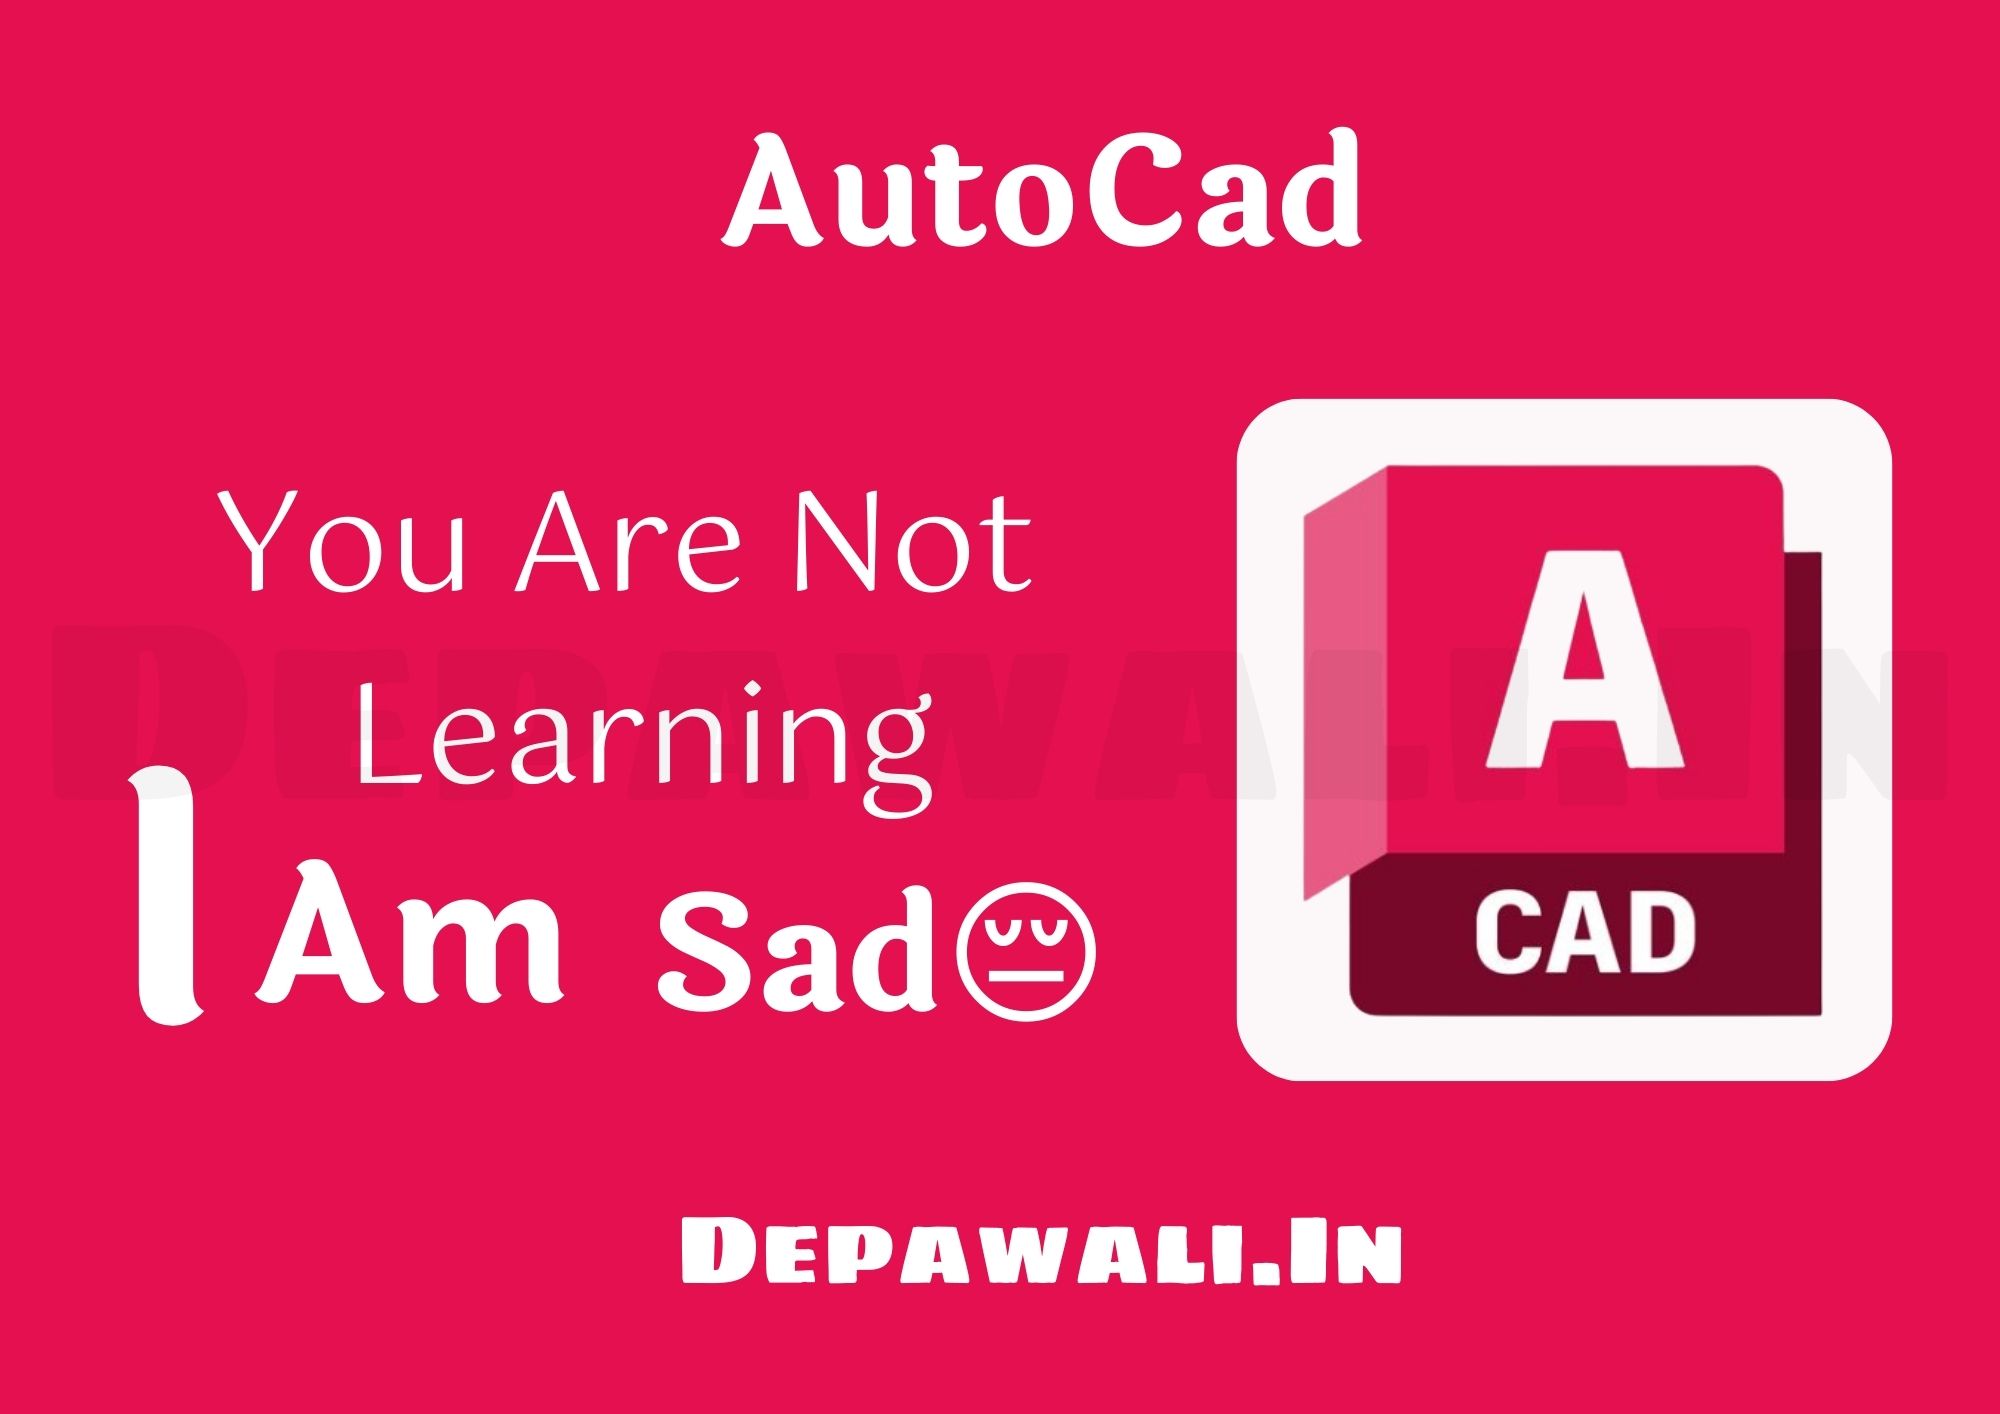 ऑटोकैड क्या है? और इसमें करियर कैसे बनाए - (AutoCAD In Hindi)